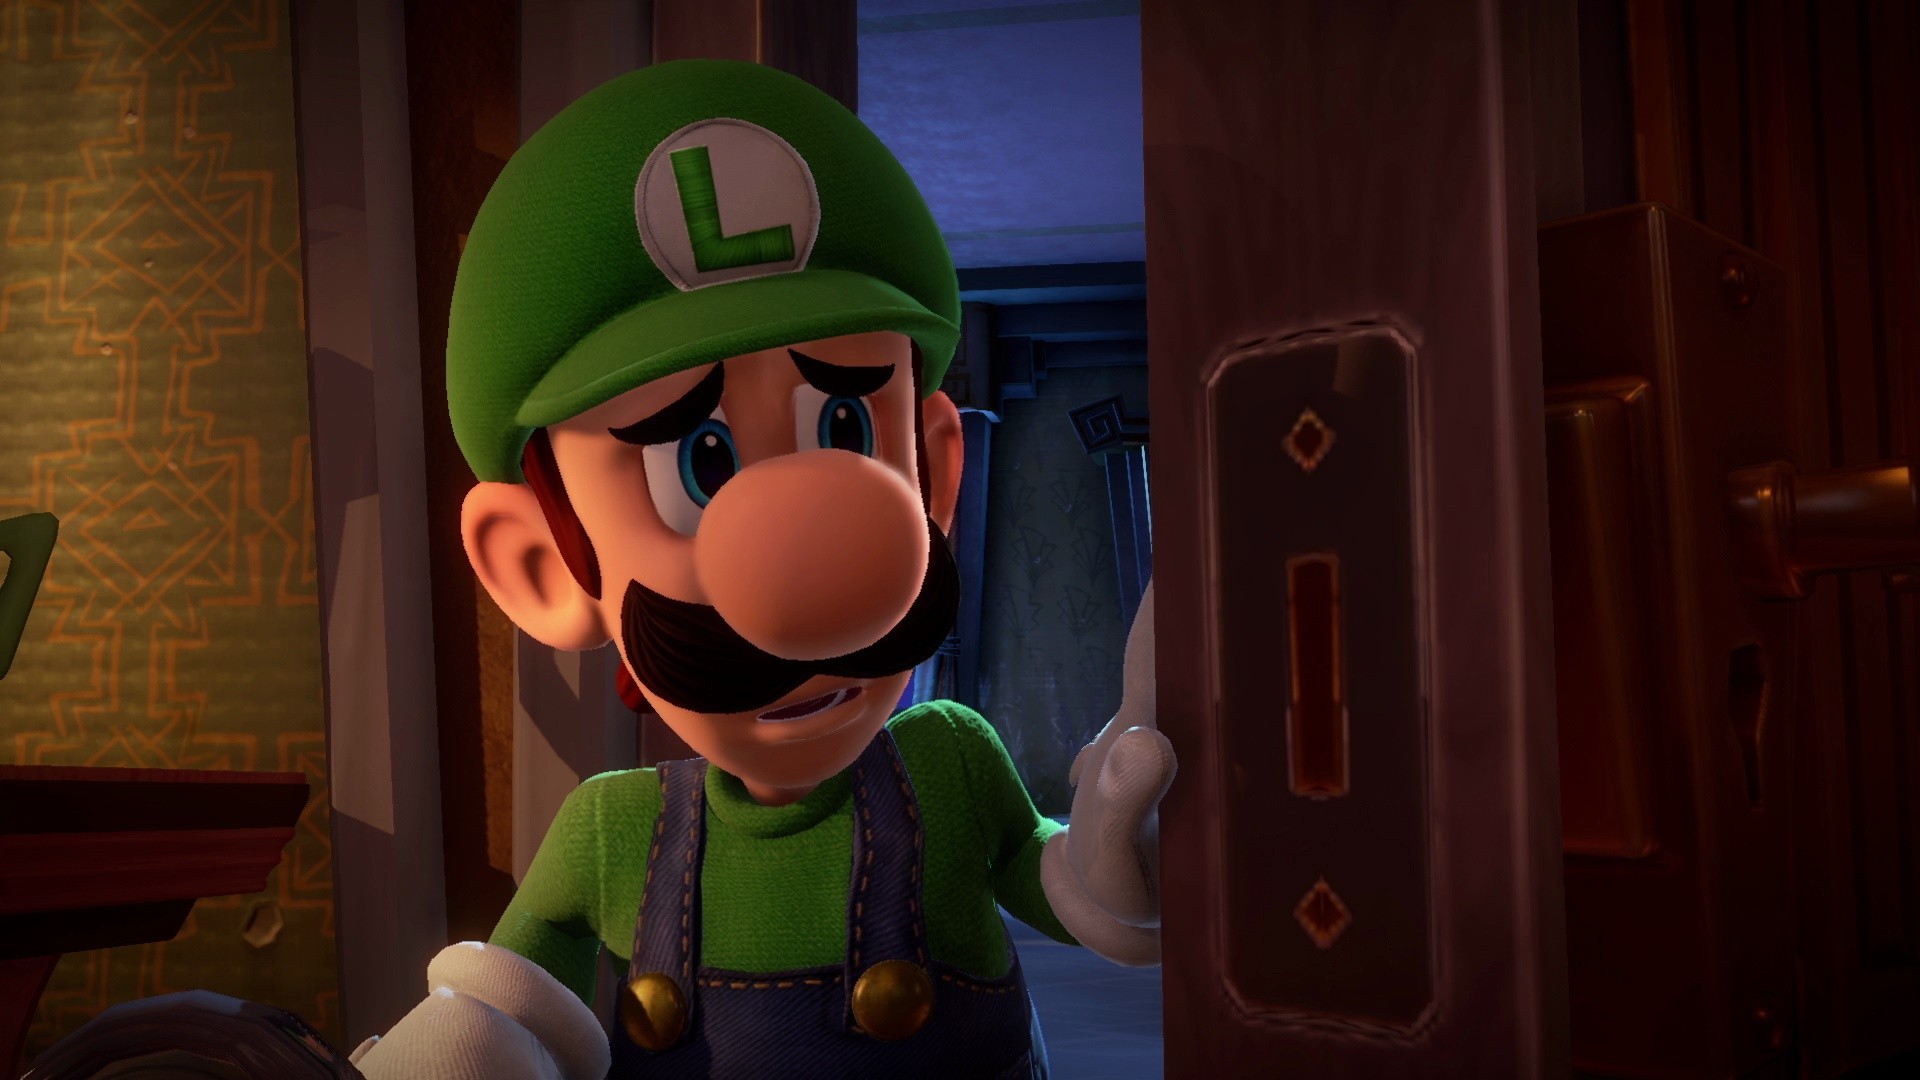 Luigi's Mansion 3 SWITCH